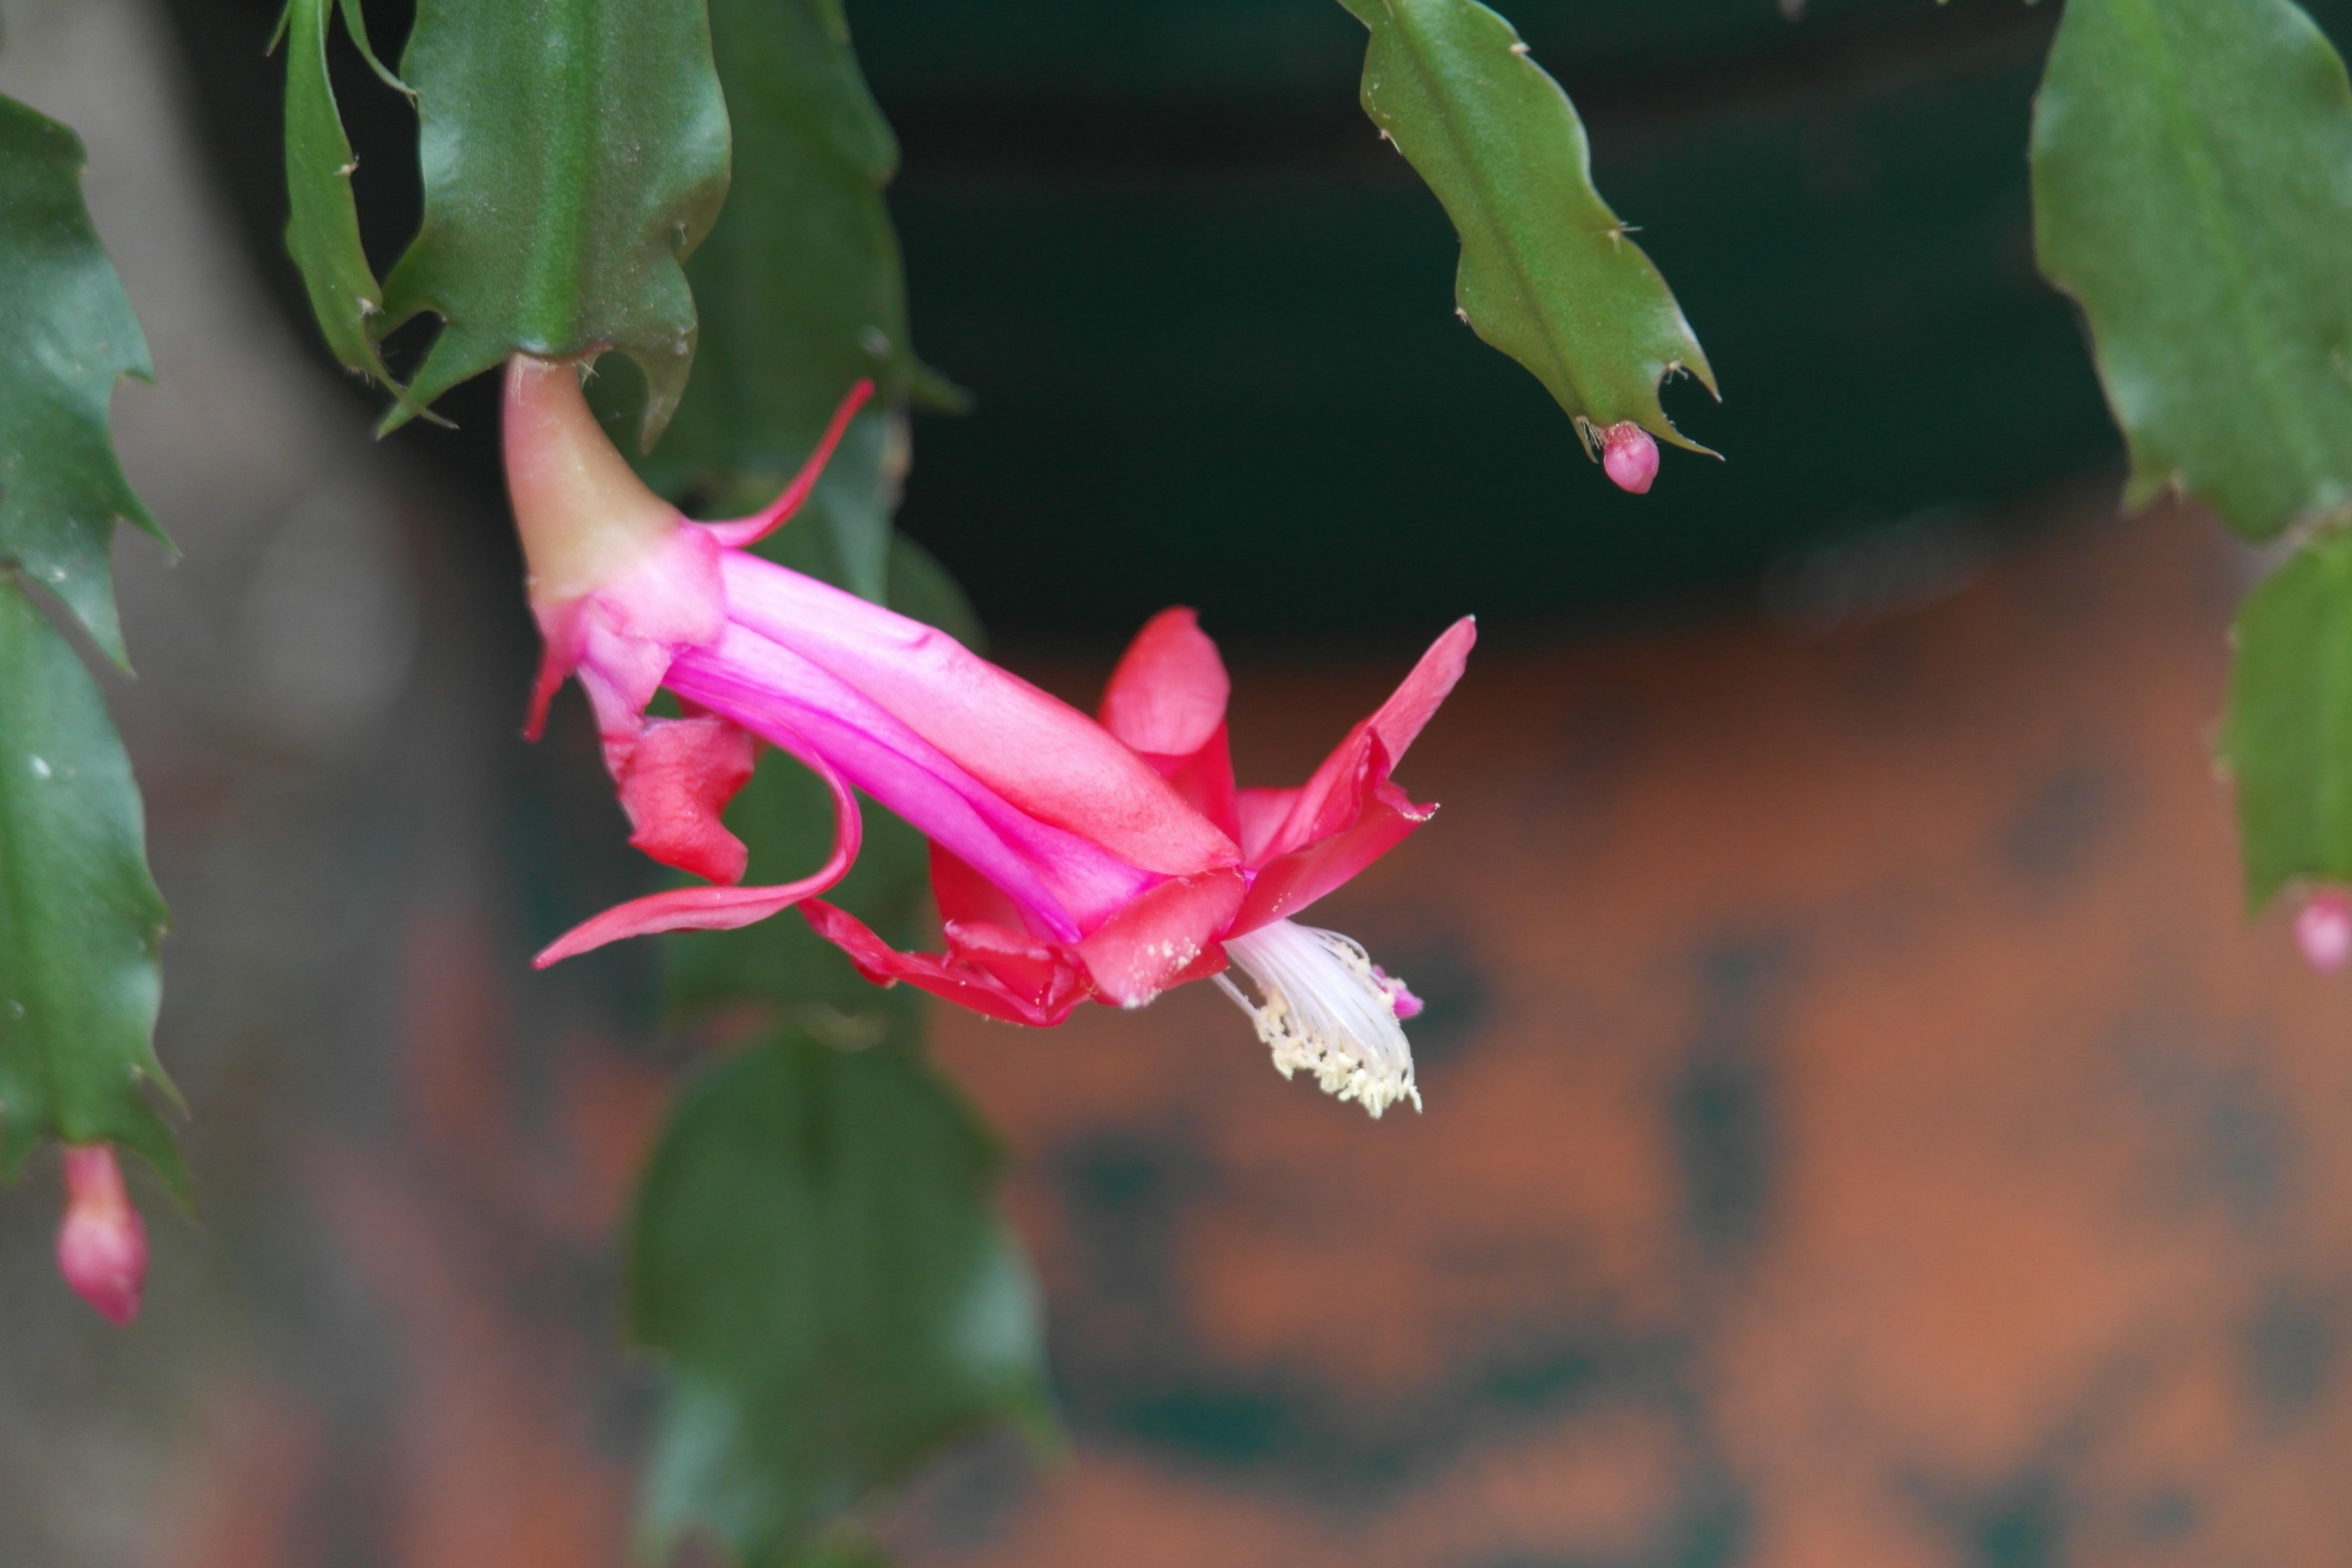 Pink flowered thanksgiving cactus